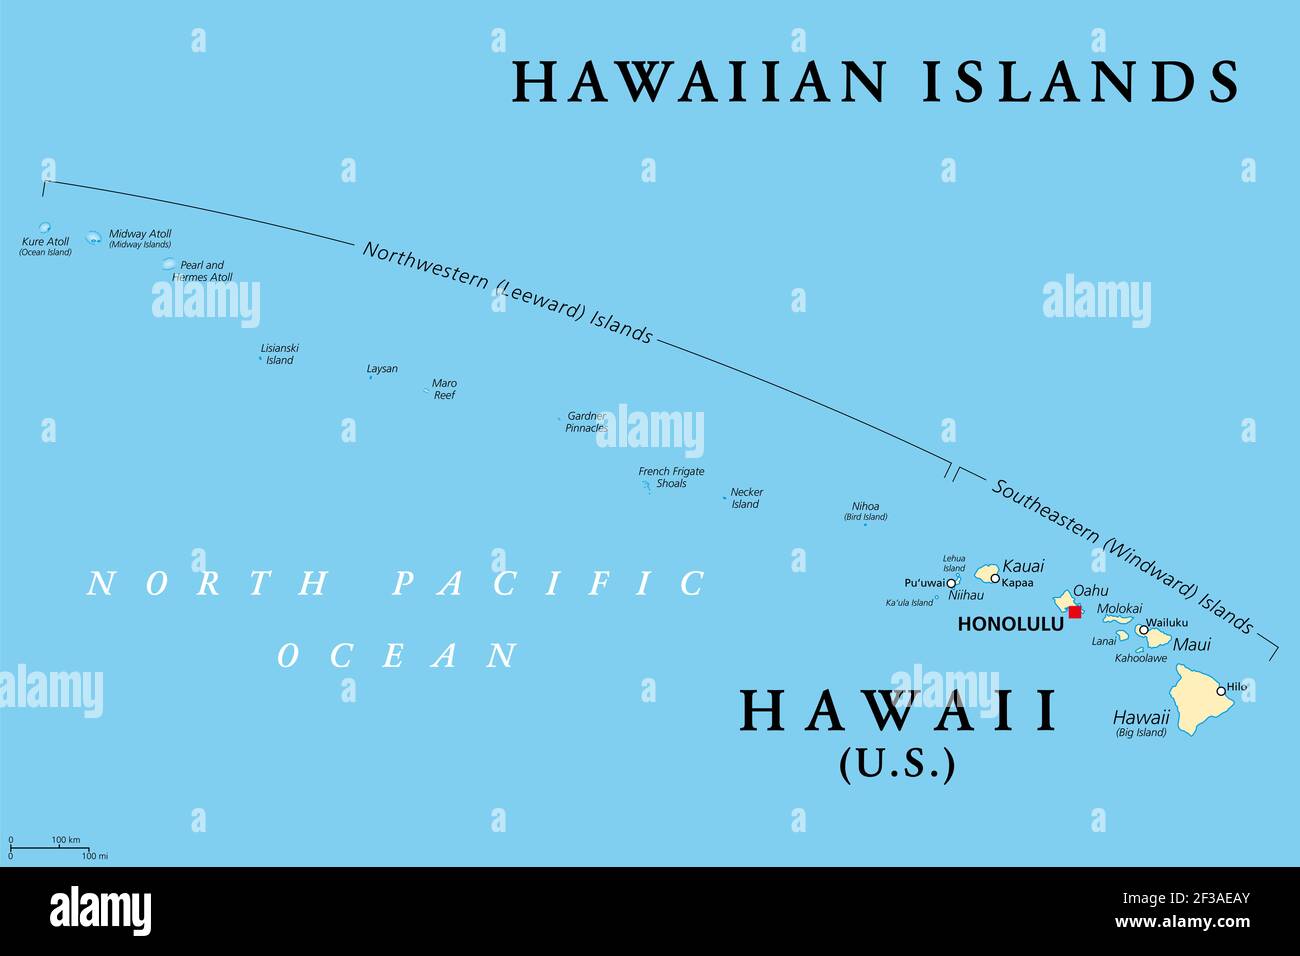 Îles hawaïennes, carte politique. État américain d'Hawaï avec la capitale Honolulu et le territoire non incorporé Midway Island. Archipel dans le Pacifique Banque D'Images